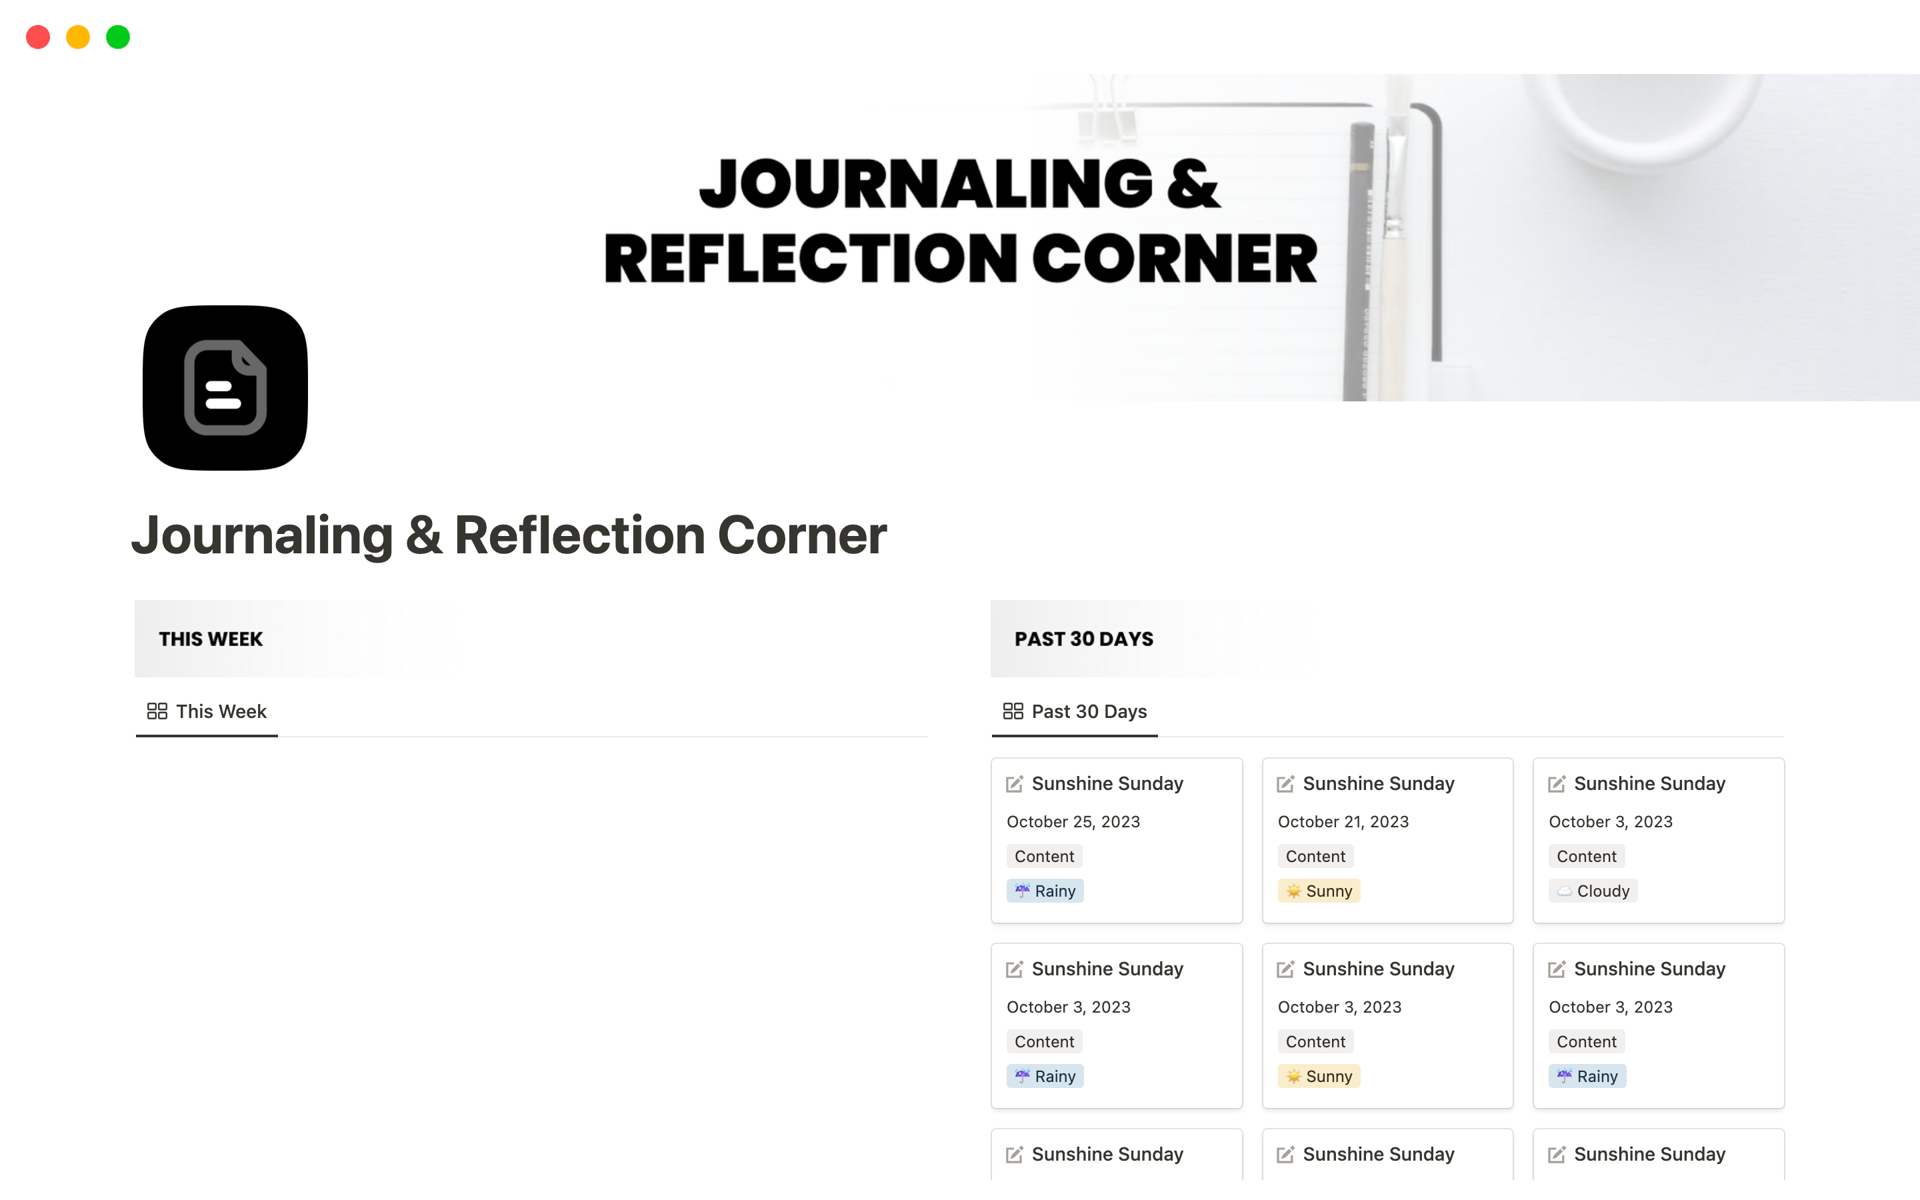 Vista previa de una plantilla para Journaling & Reflection Corner